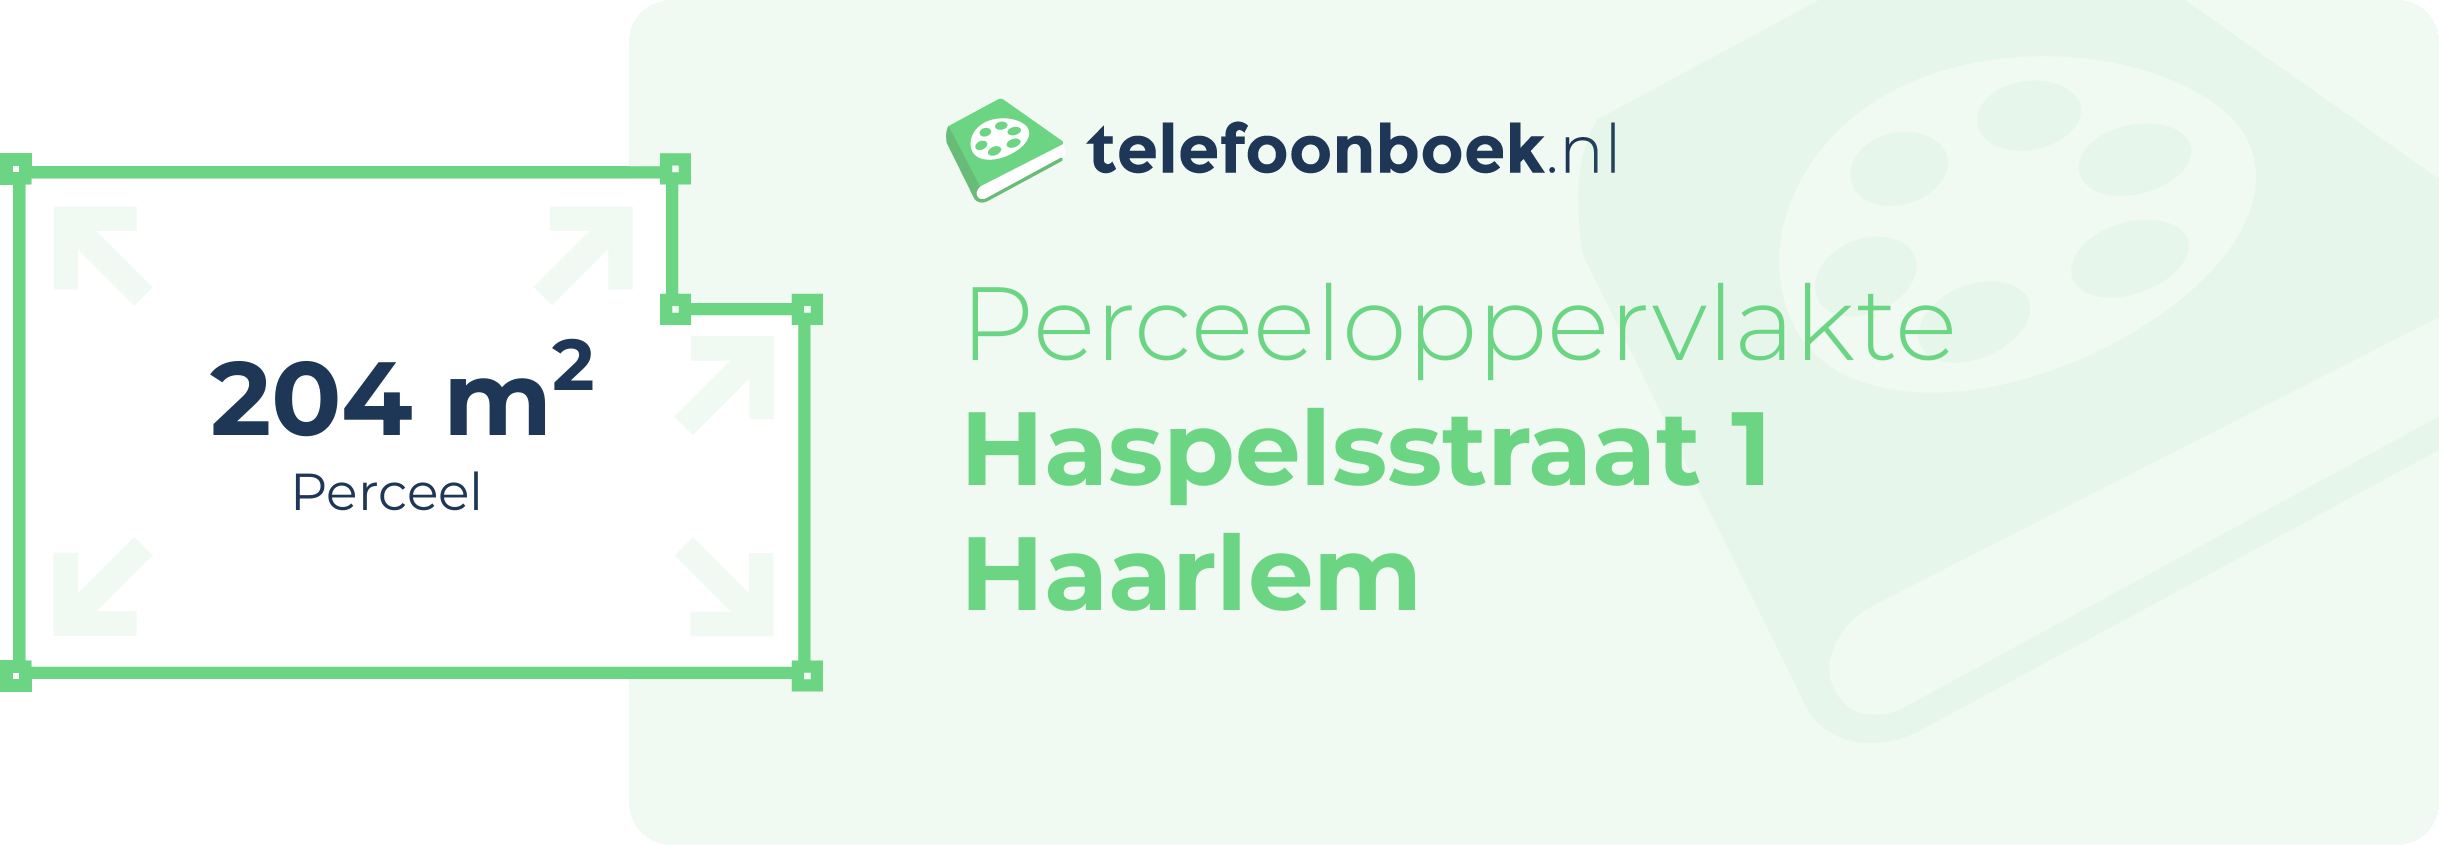 Perceeloppervlakte Haspelsstraat 1 Haarlem